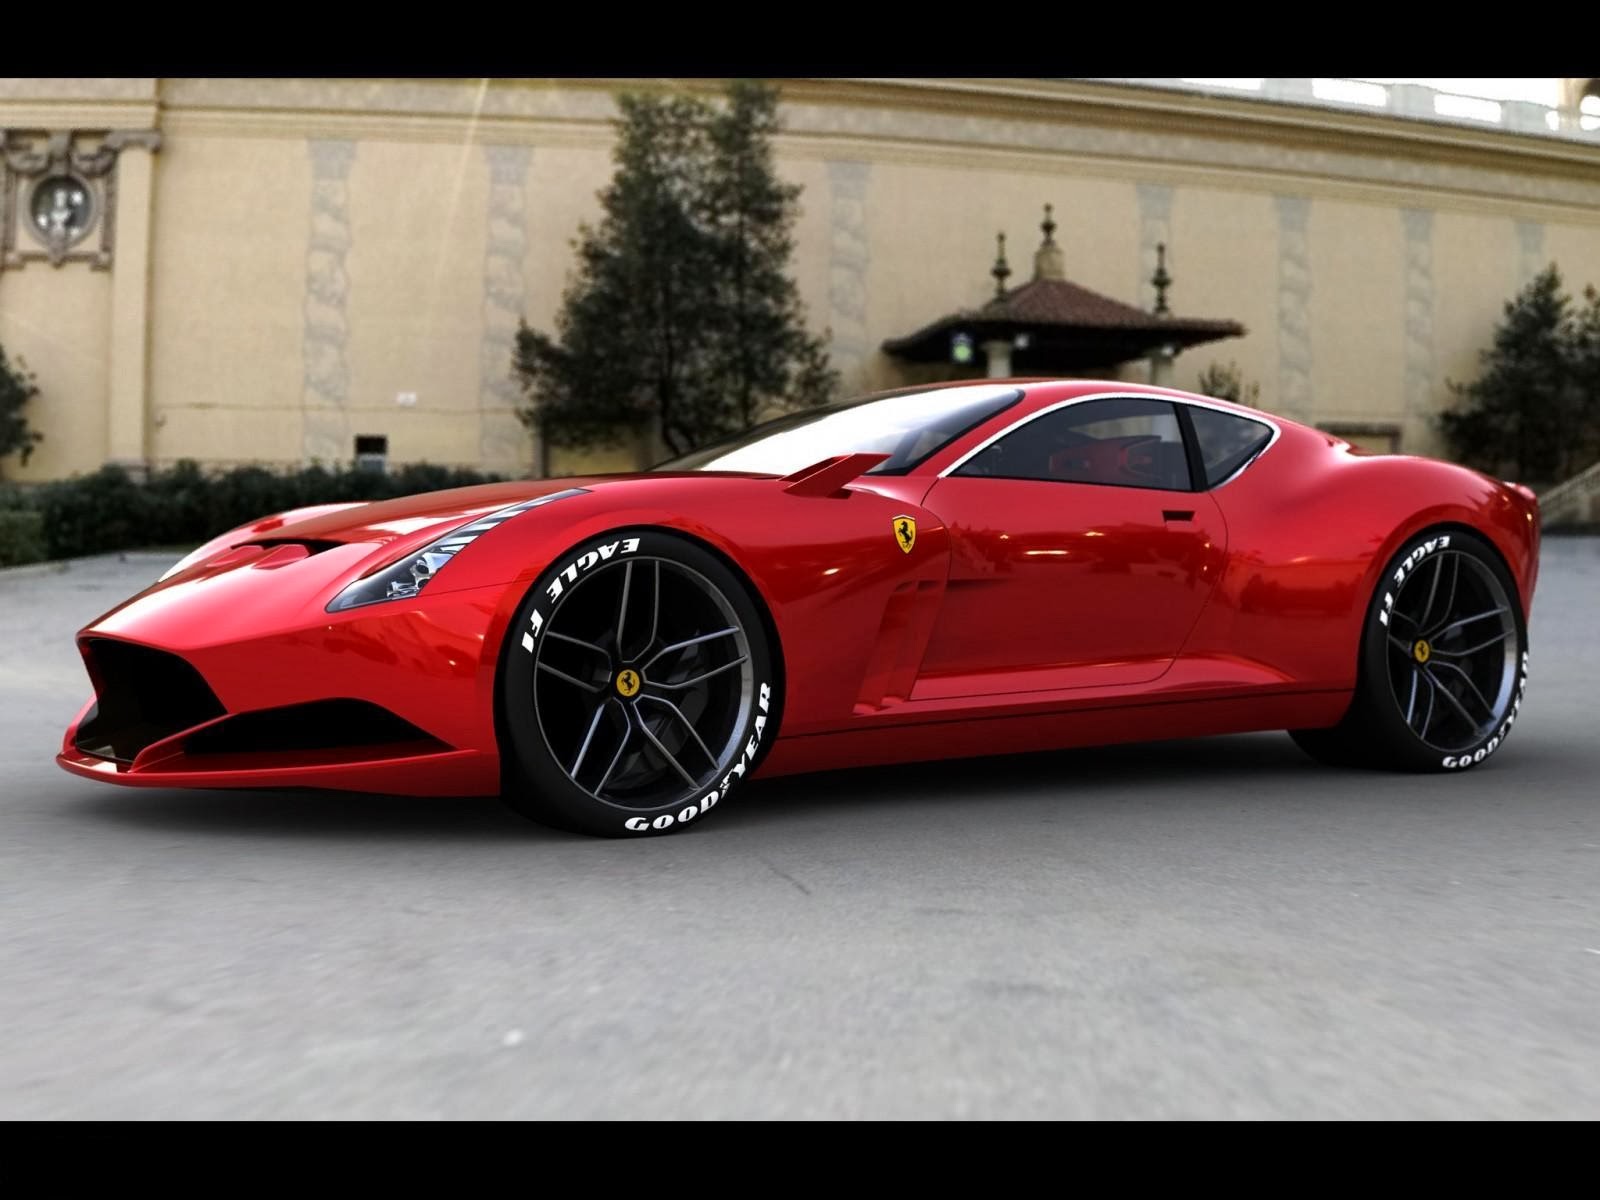 Ferrari 612 GTO concept prepared for 2015